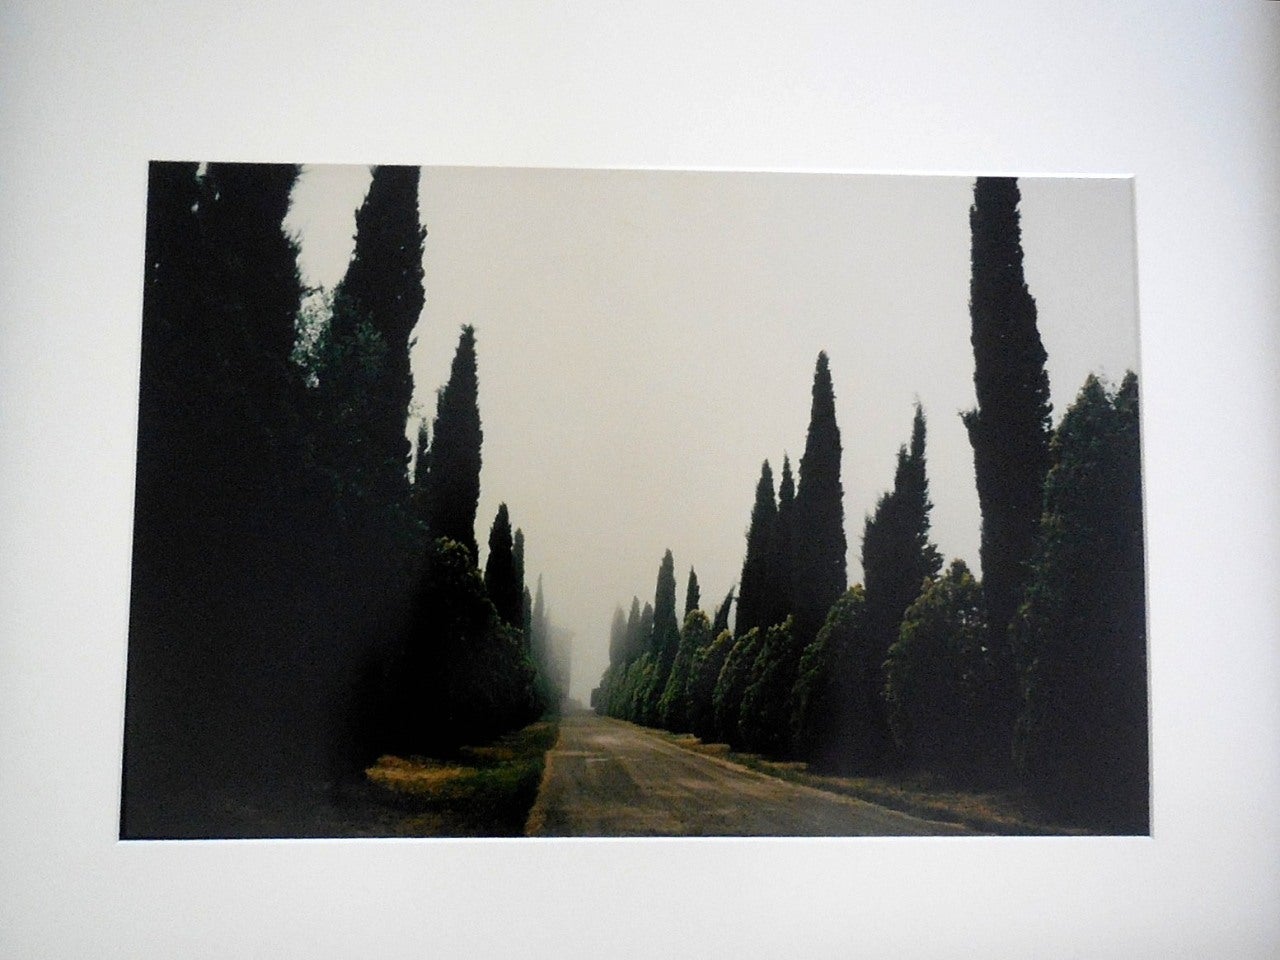 Tuscany, Castello, 1996 - Black Landscape Photograph by Joel Meyerowitz